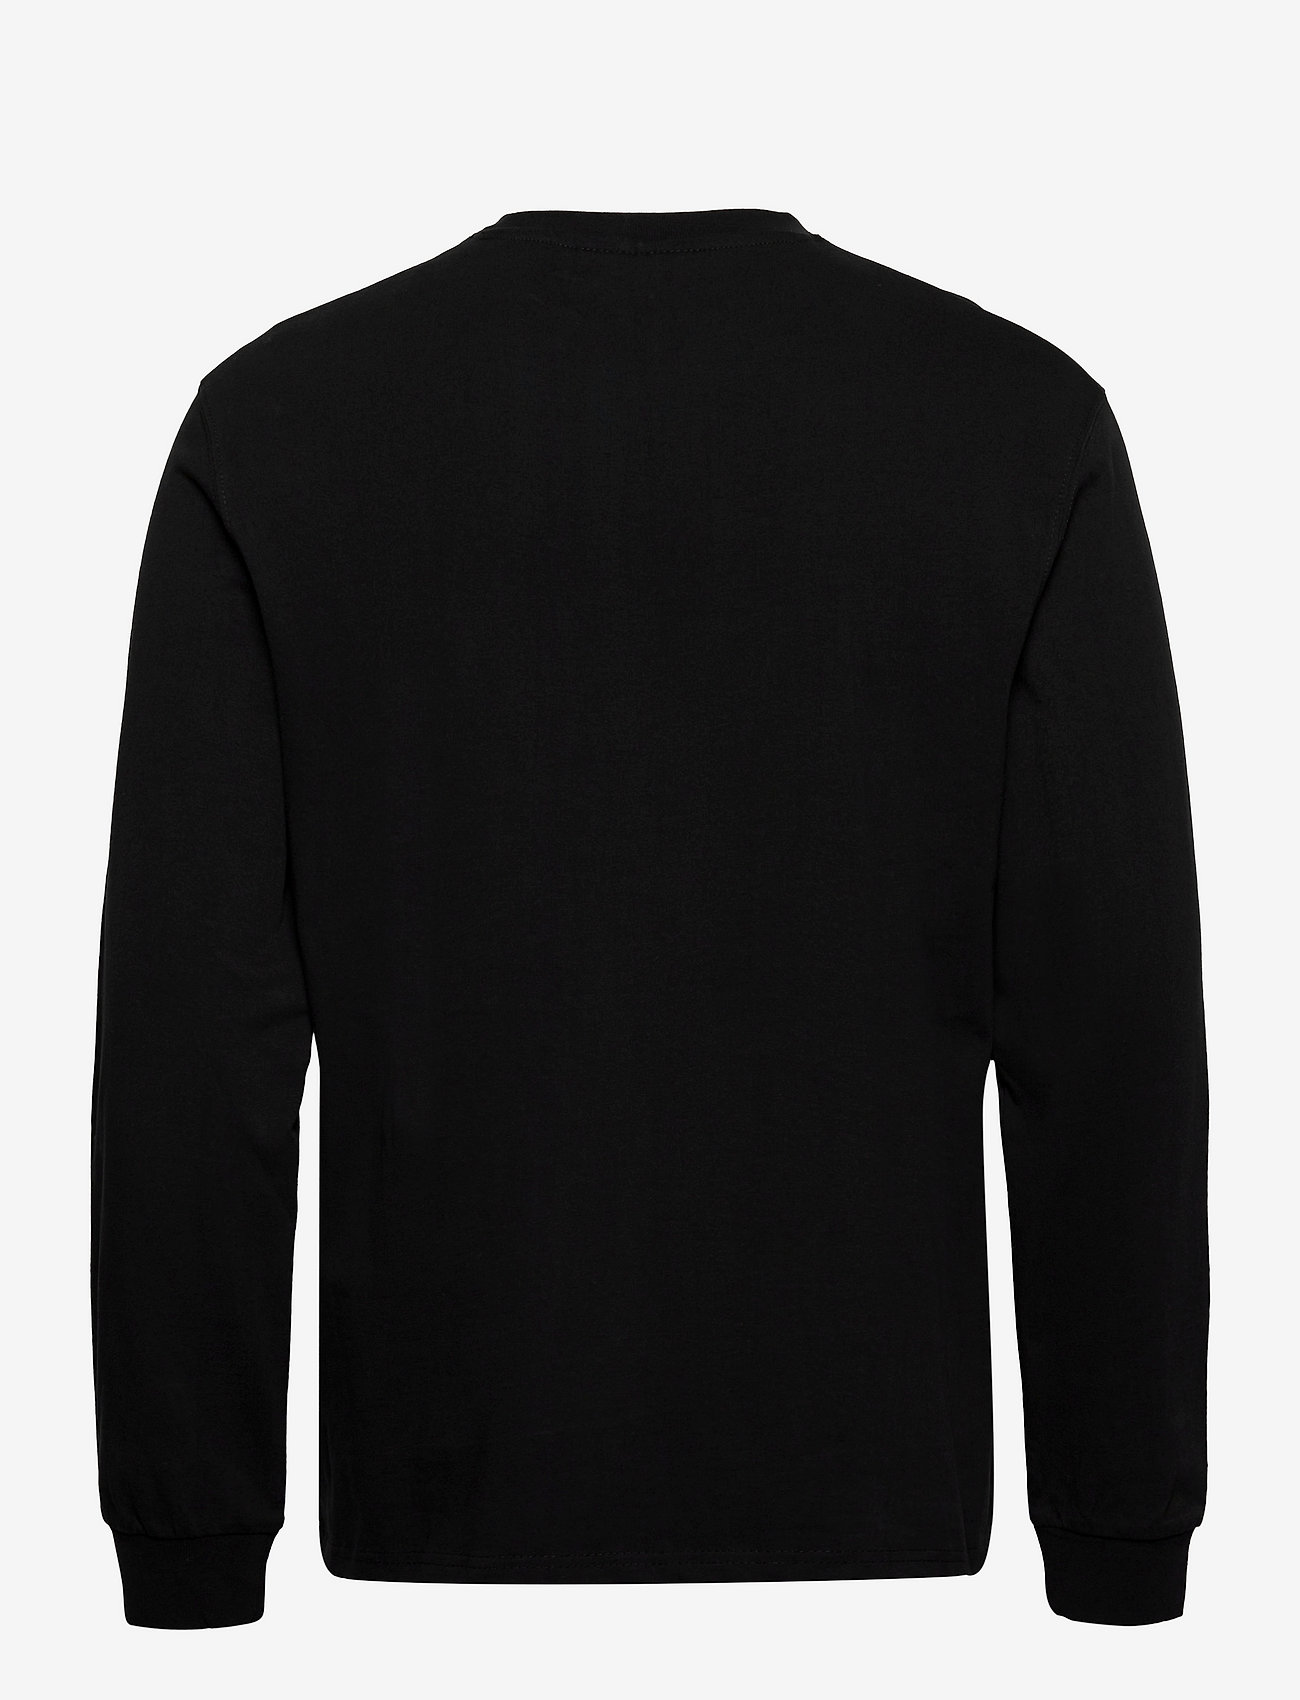 HAN Kjøbenhavn - Casual Tee Long Sleeve - basic skjorter - black logo - 1